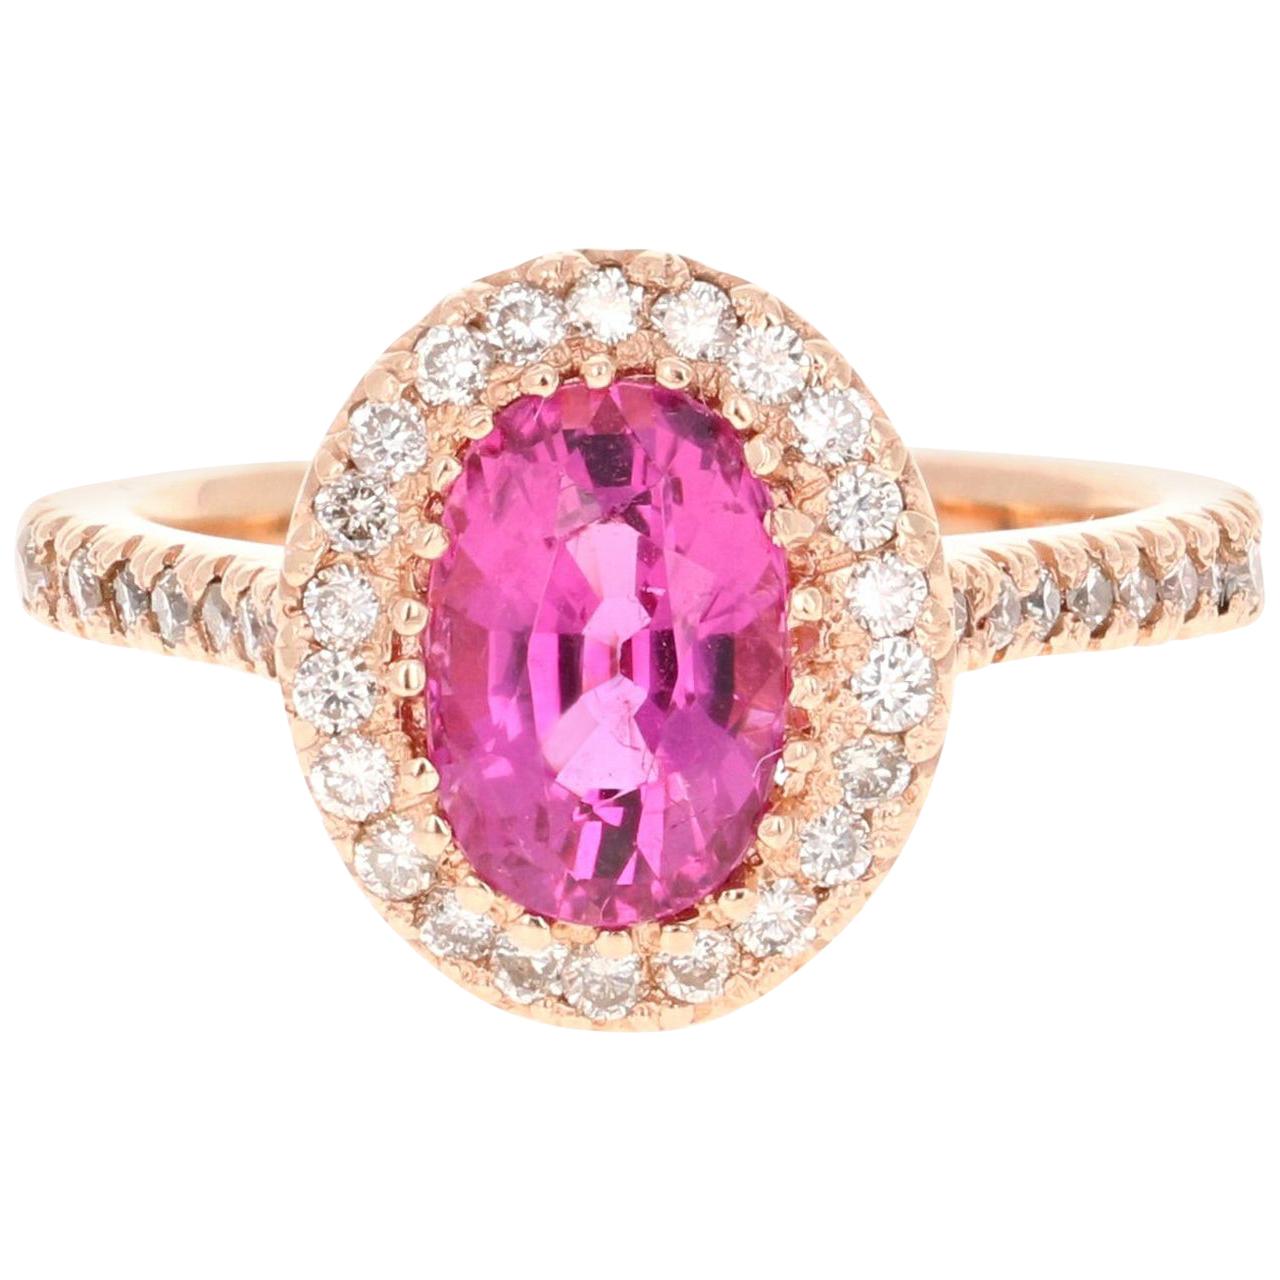 2.62 Carat Pink Tourmaline Diamond 14 Karat Rose Gold Engagement Ring